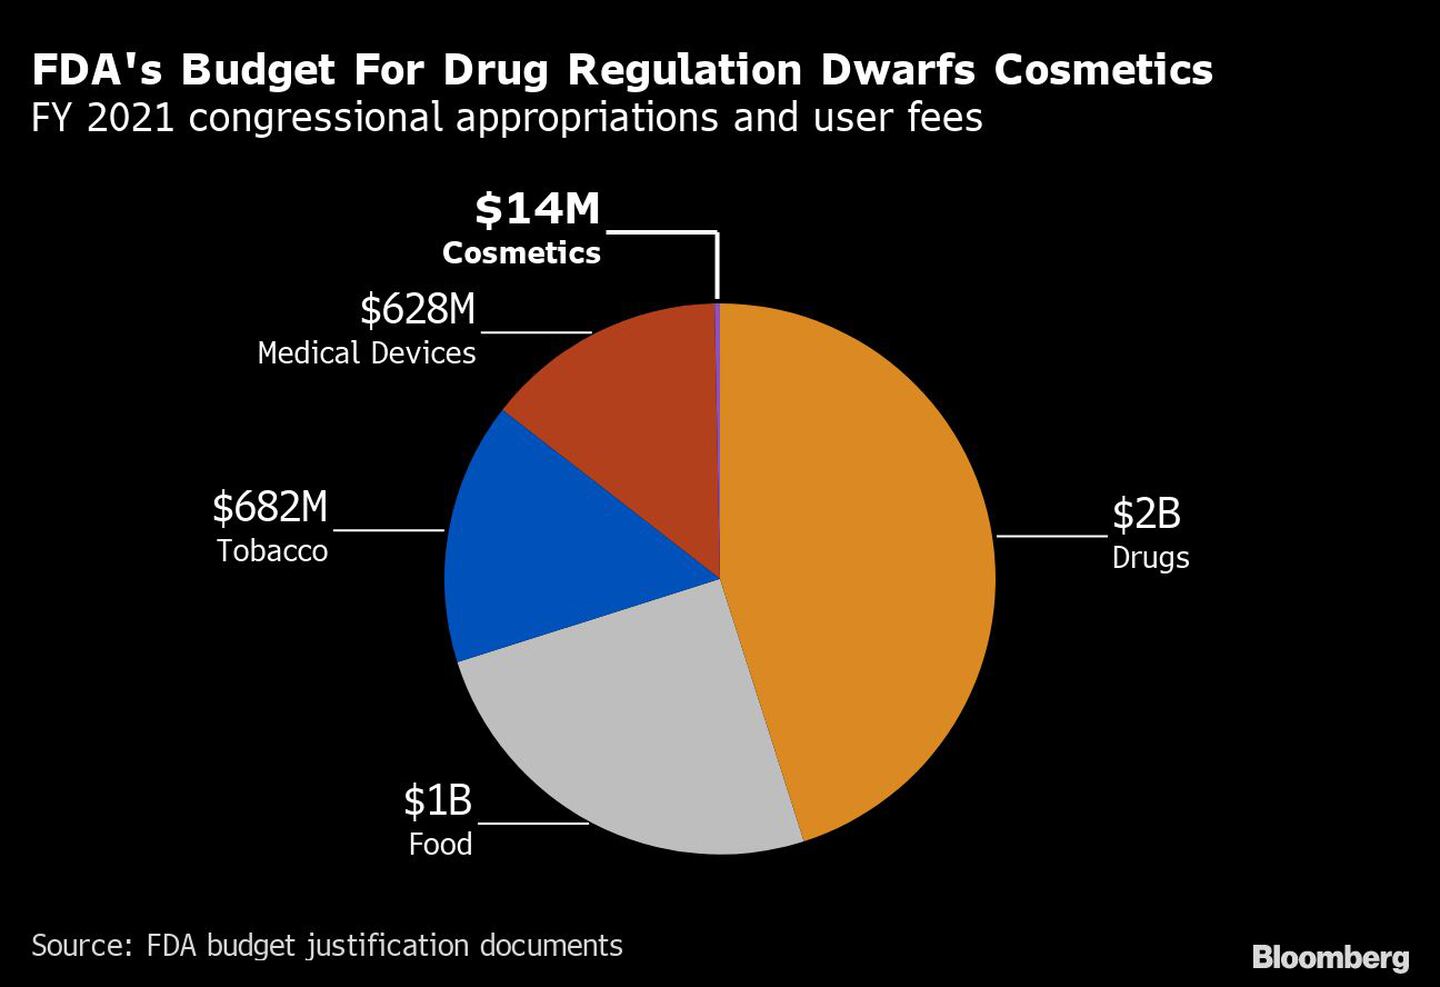 El presupuesto de la FDA para la regulación de medicamentos empequeñece a los cosméticos
Asignaciones del Congreso para el año fiscal 2021 y tasas de usuario 
US$2.000 millones en medicamentos
US$1.000 millones en alimentos
US$682 millones en tabaco
US$628 millones en dispositivos médicos
US$14 millones en cosméticosdfd